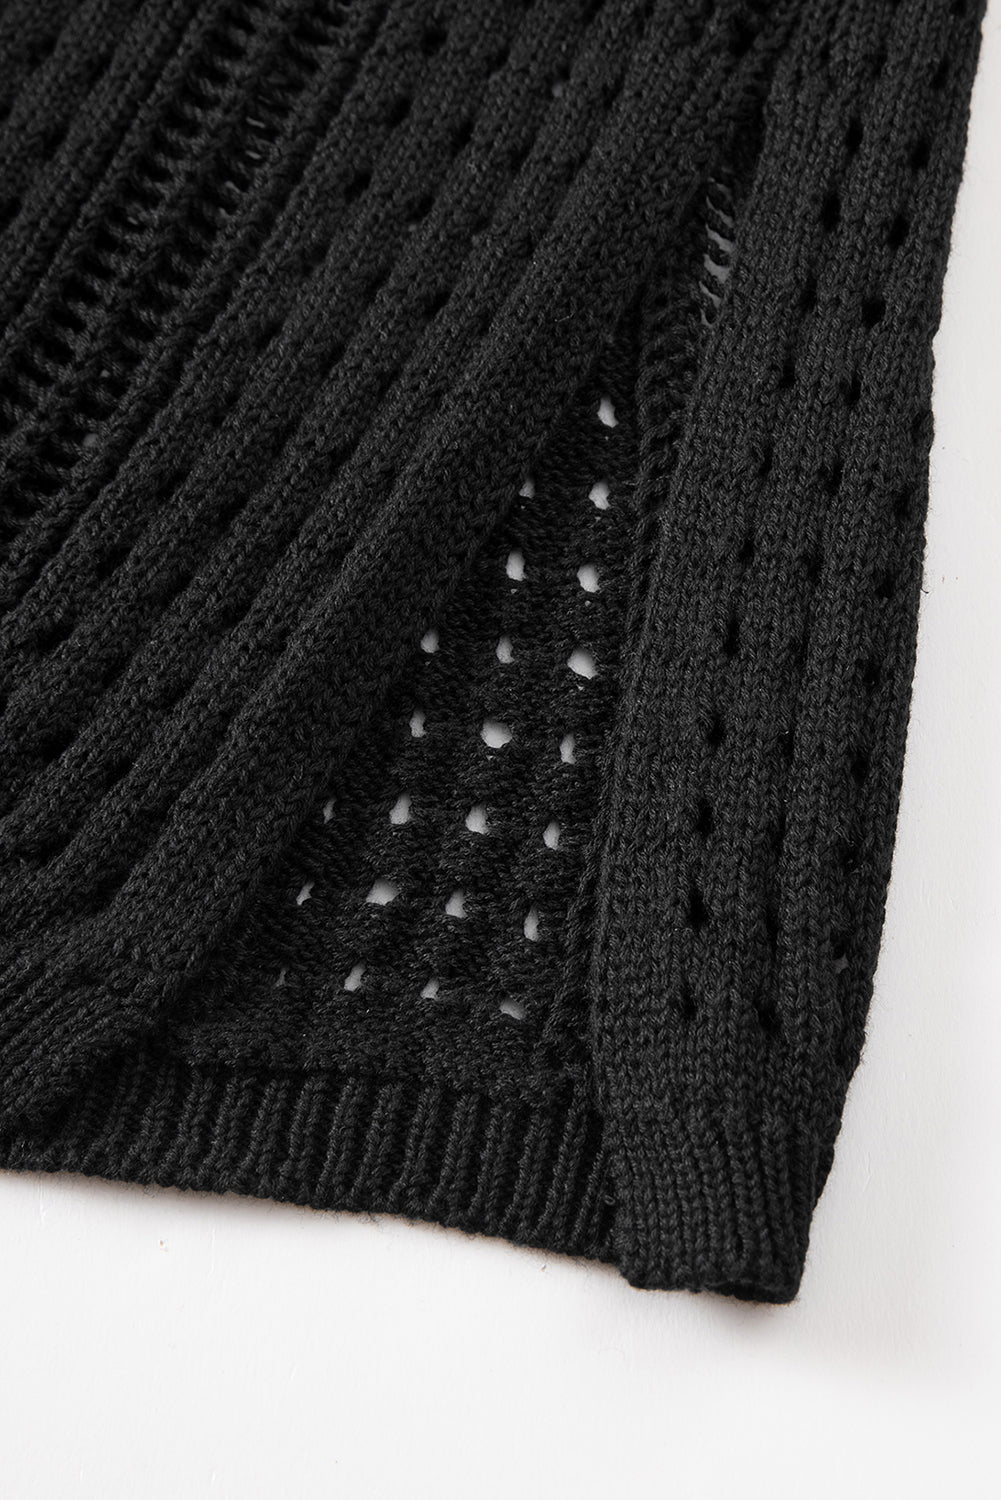 Črna kvačkana izdolbena obleka za plažo brez rokavov z vrvico